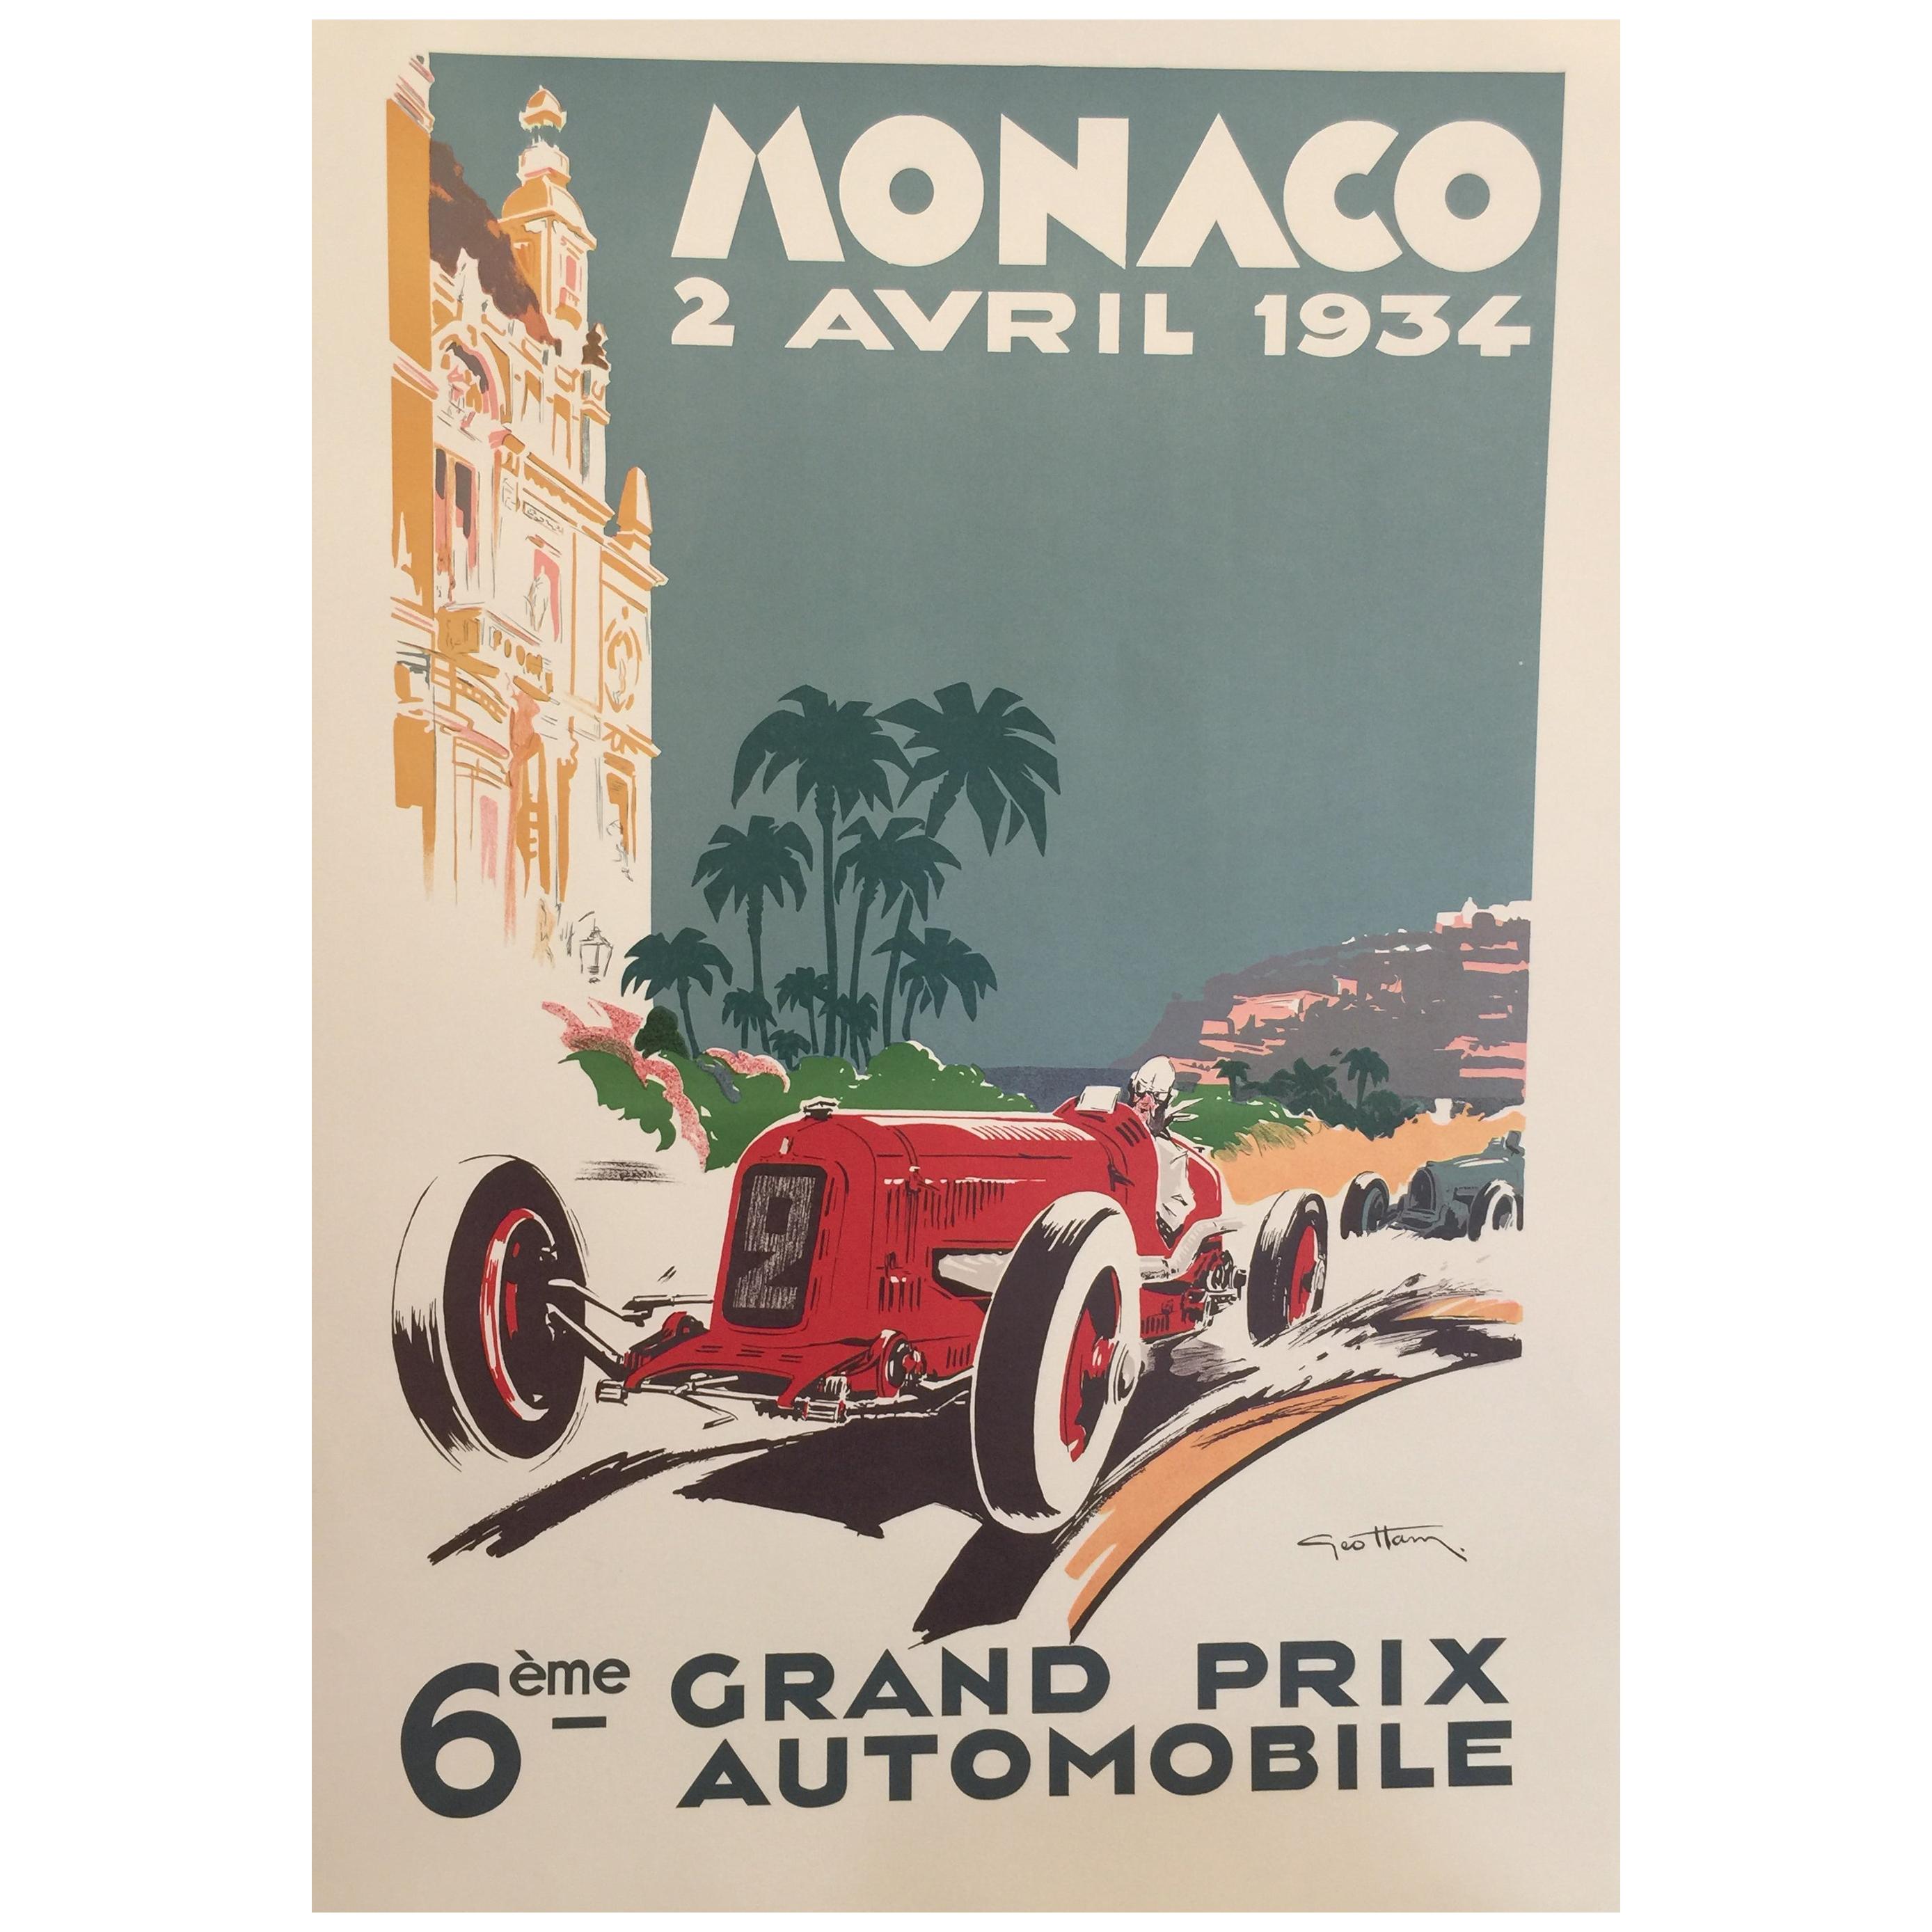 1979 37th Monaco Grand Prix Automobile Race Car Advertisement Vintage Poster 